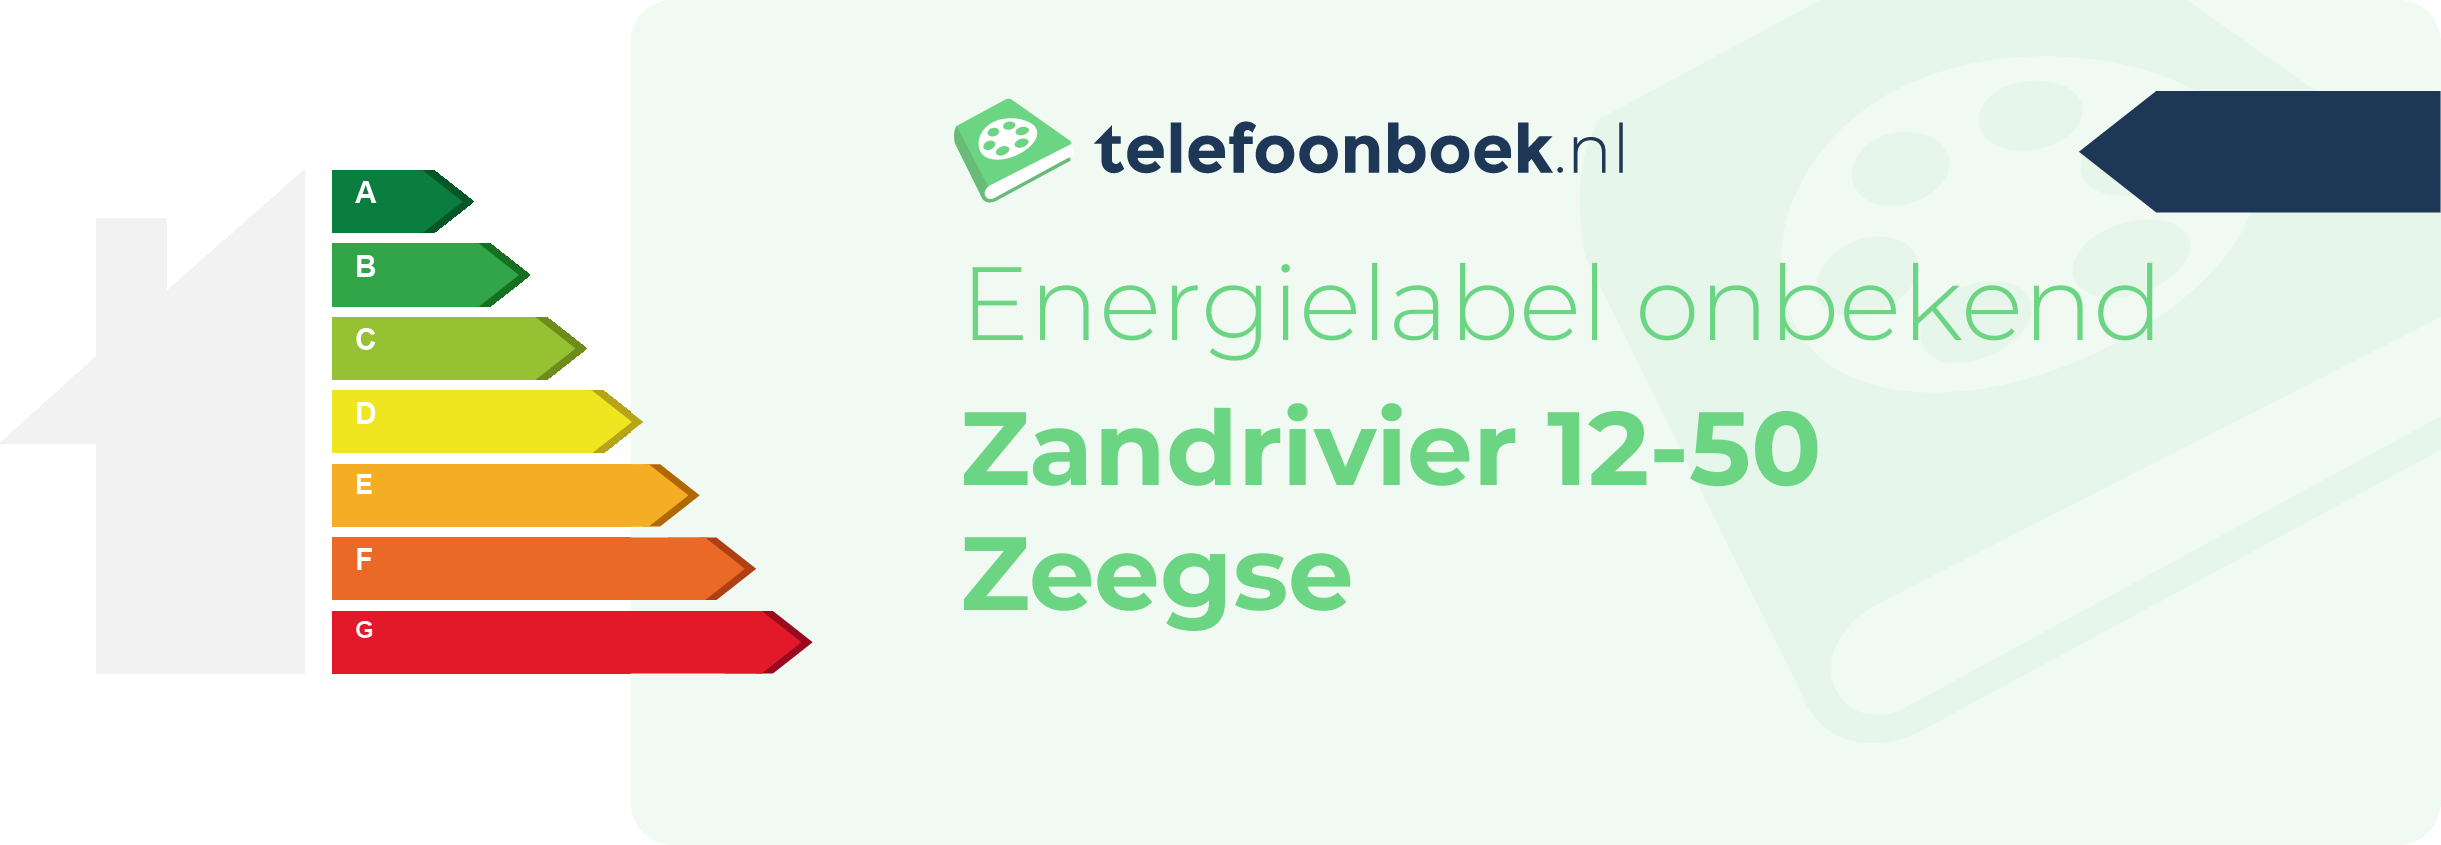 Energielabel Zandrivier 12-50 Zeegse